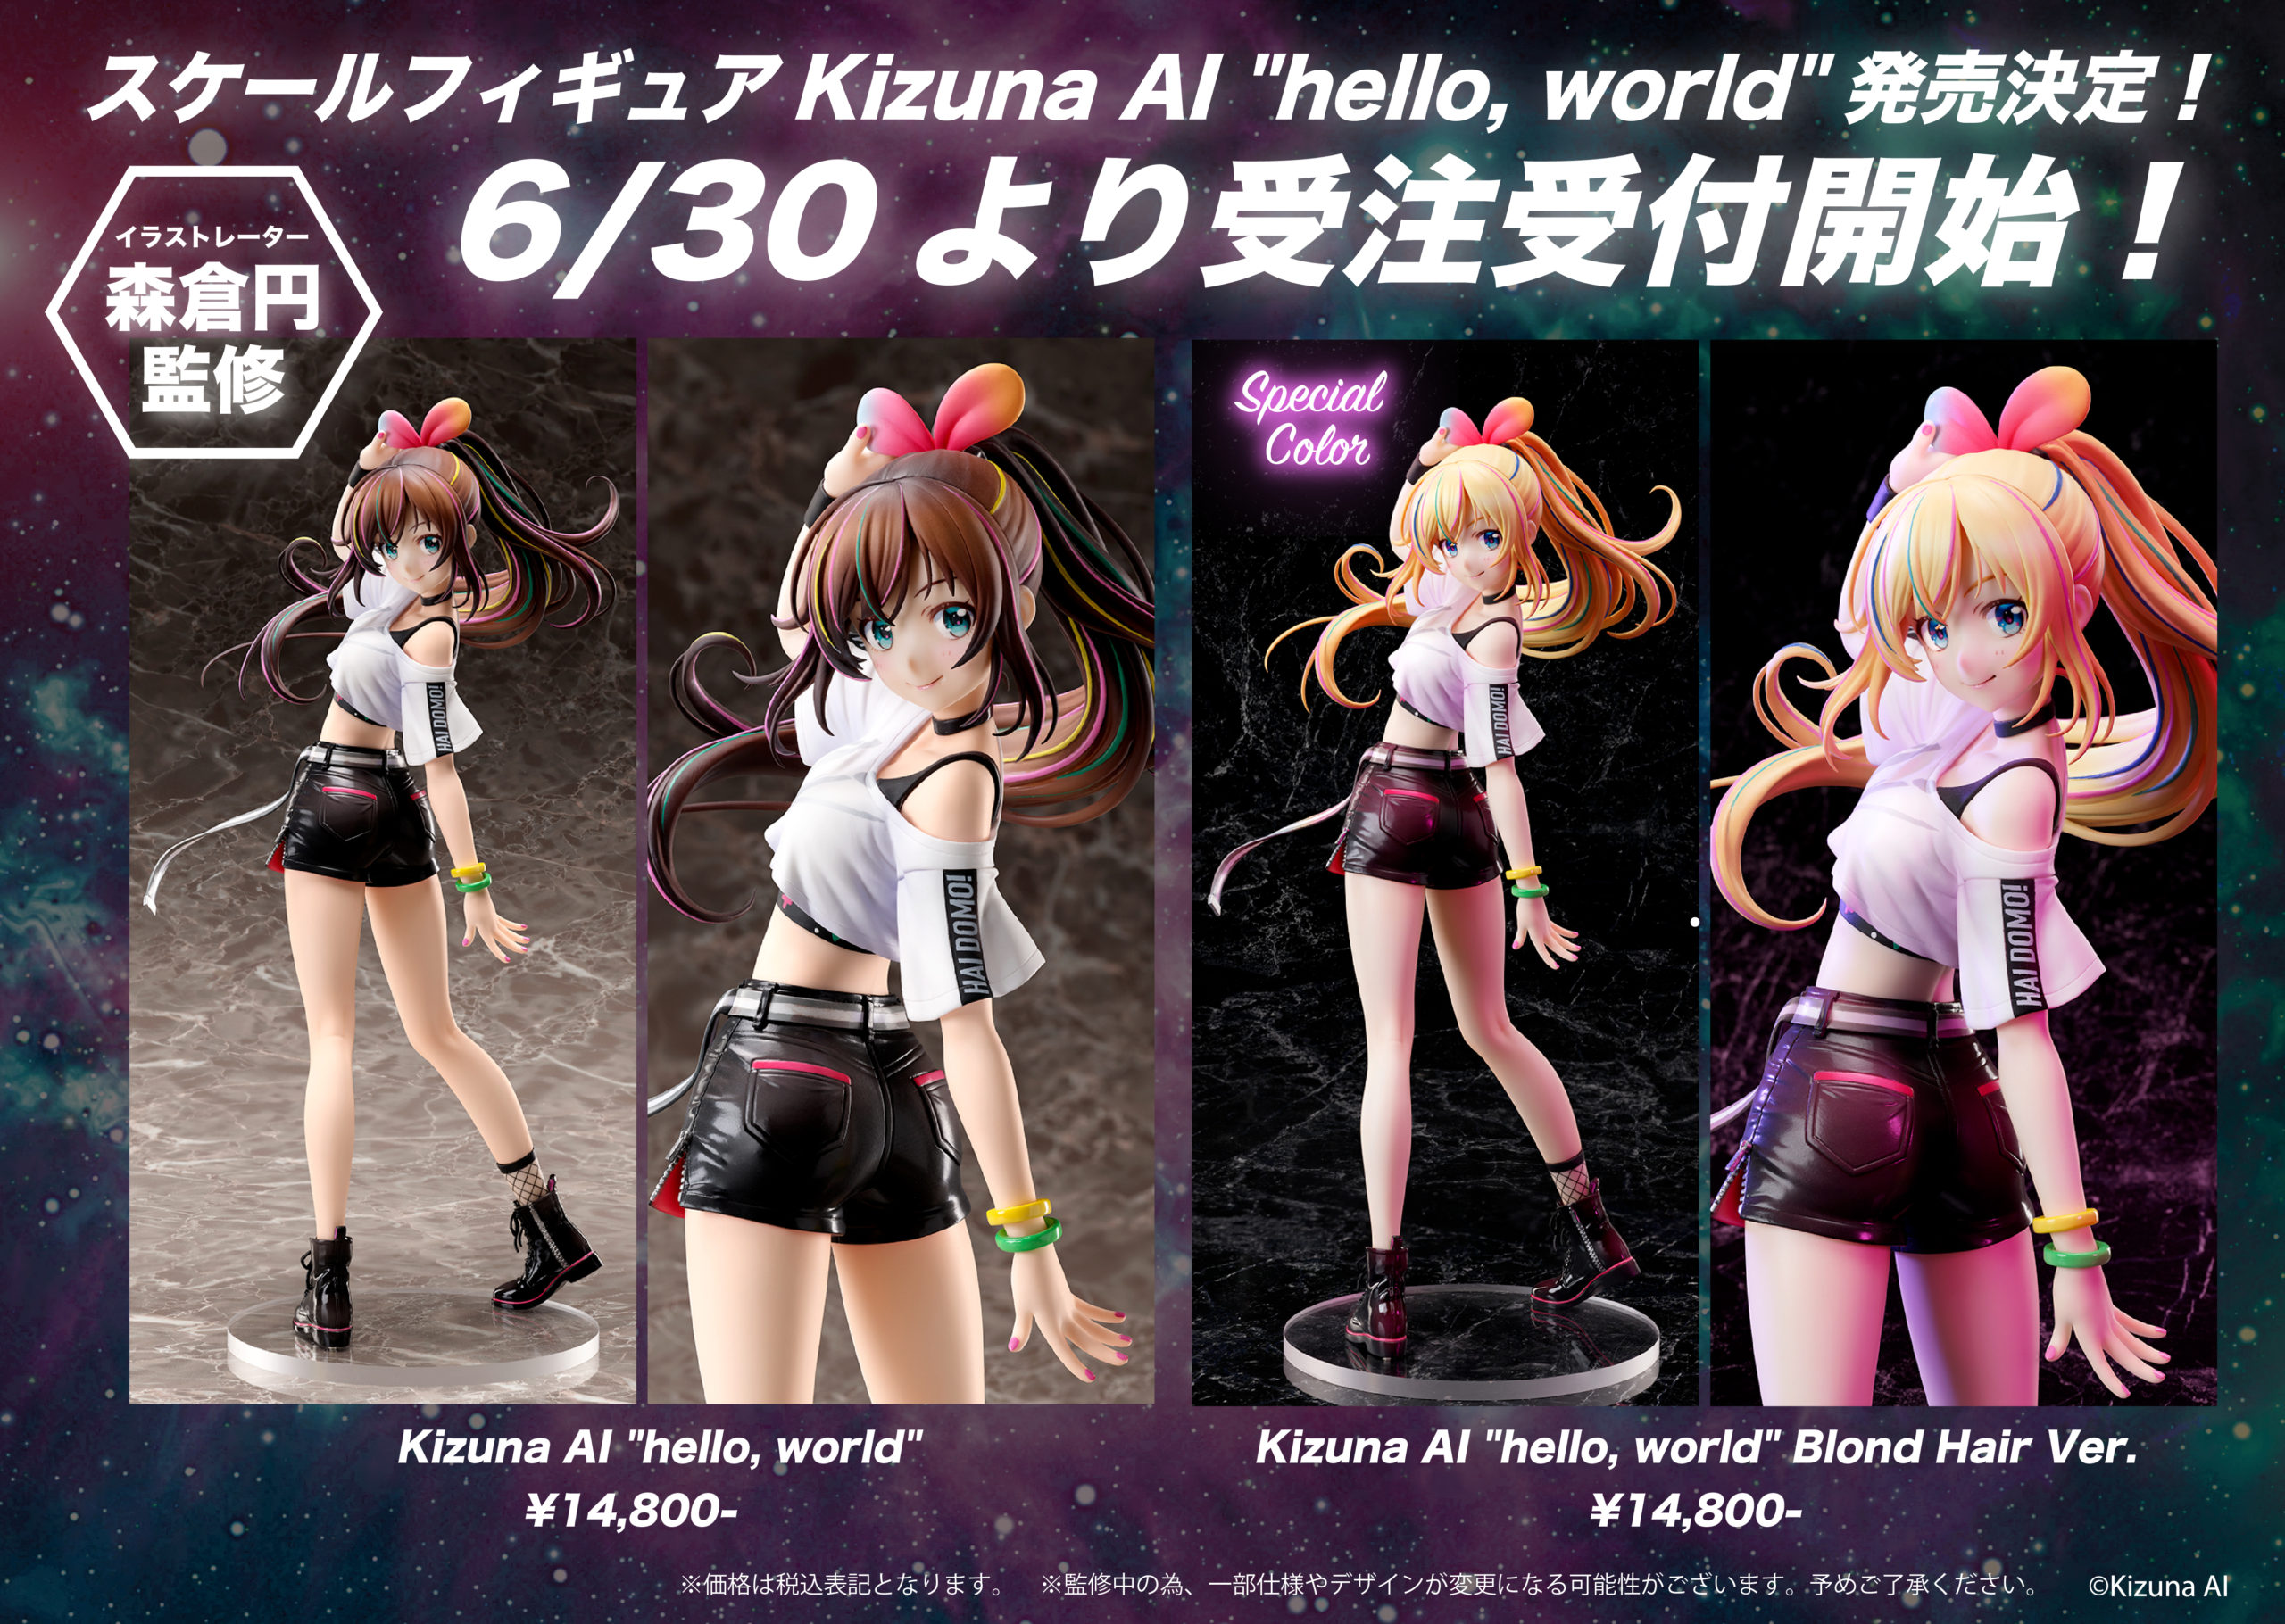 Pre-order starts for new figure Kizuna AI “hello, world” | Kizuna